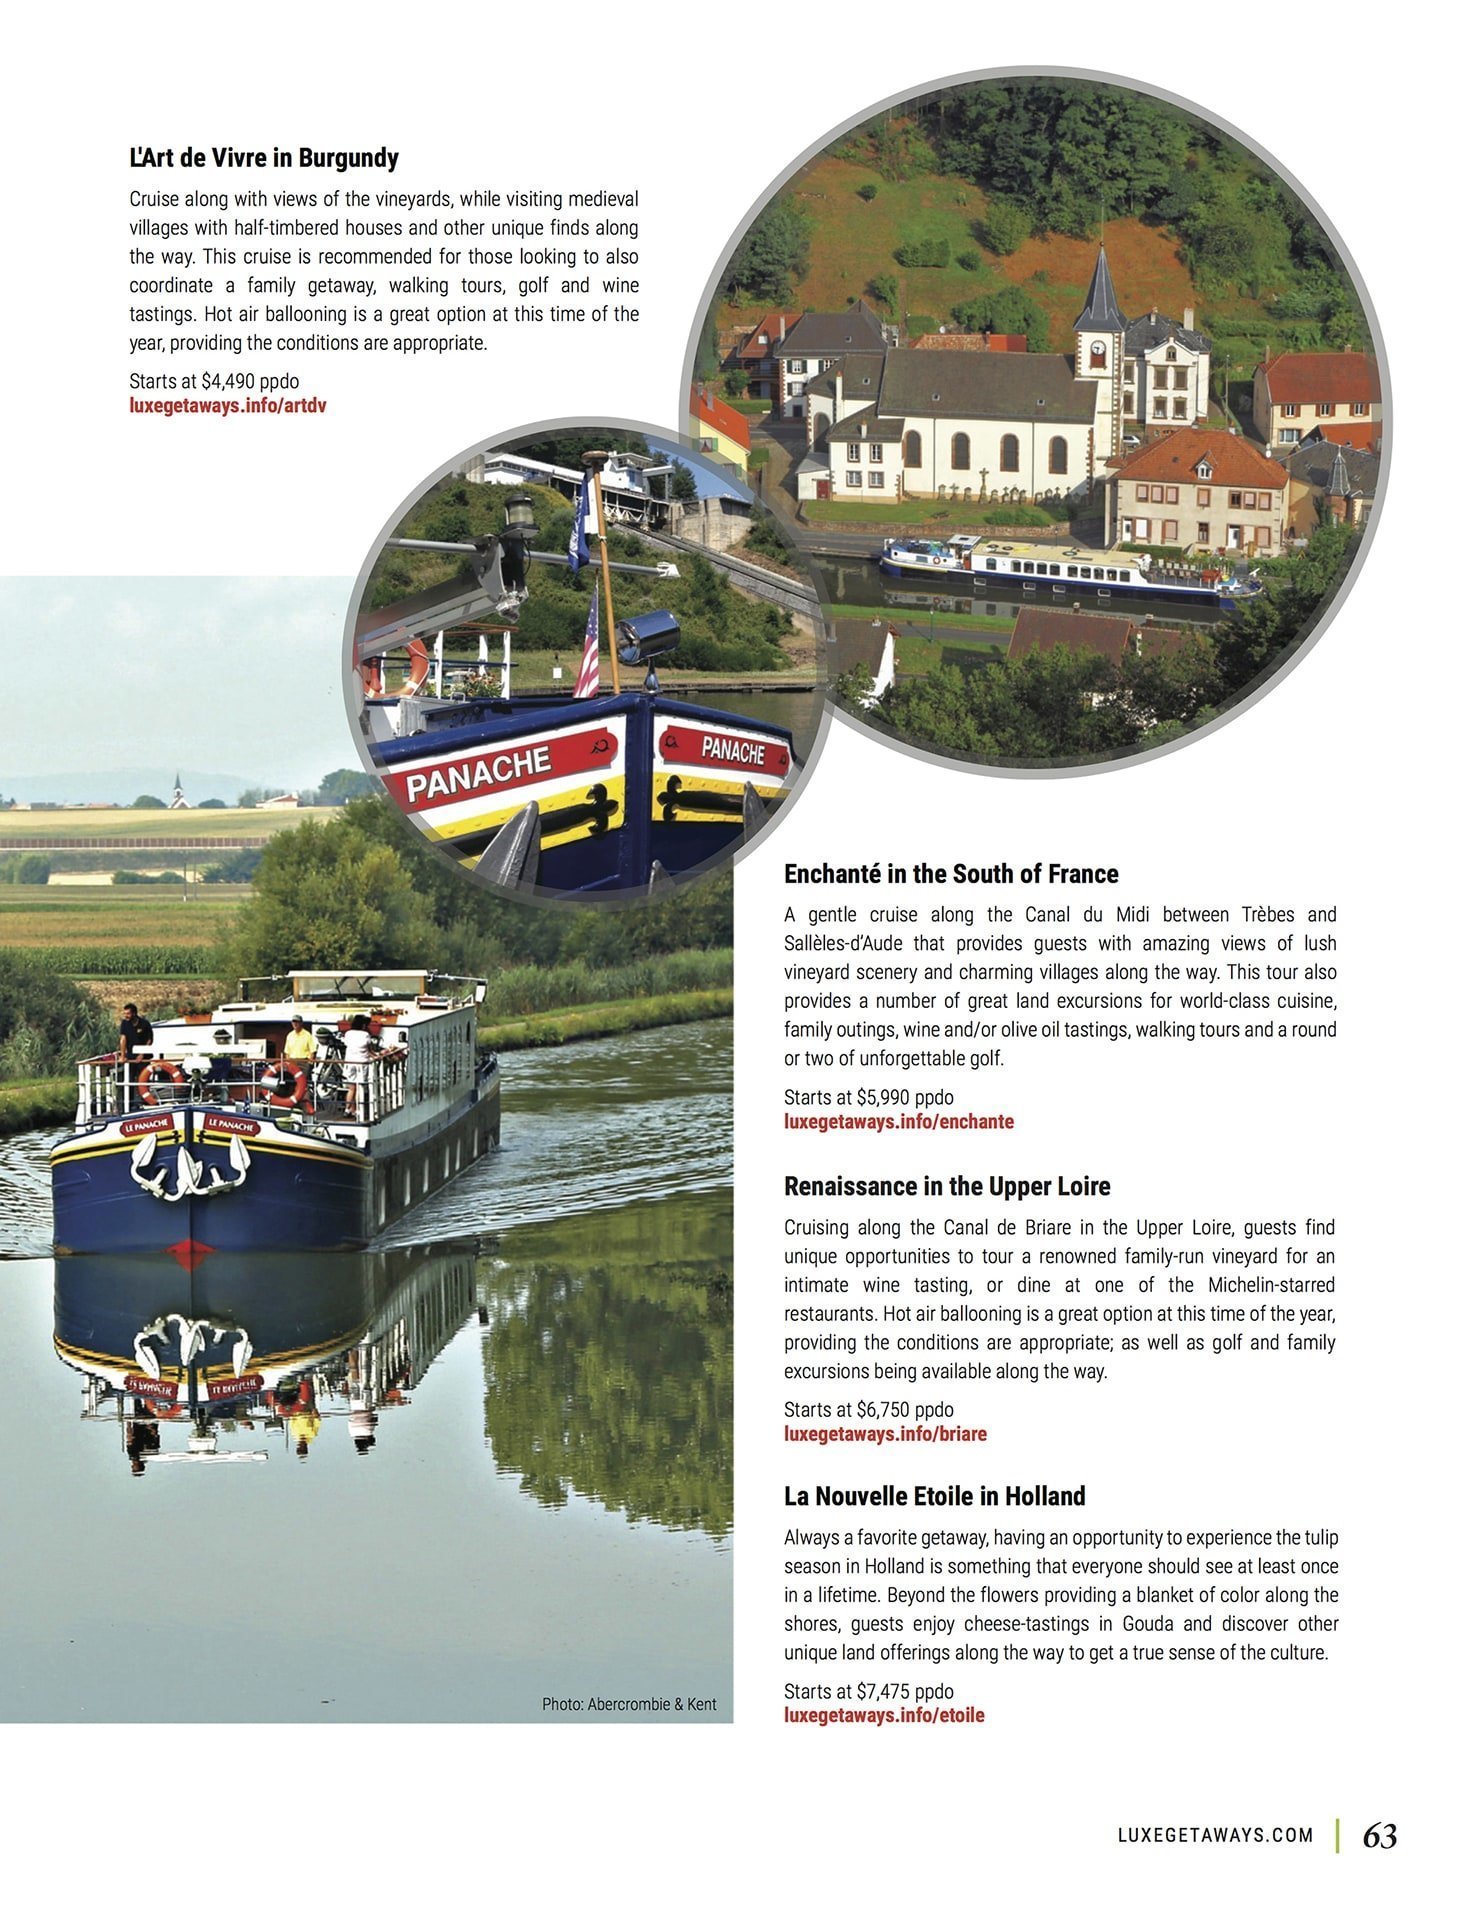 LuxeGetaways - Luxury Travel - Luxury Travel Magazine - Barge Cruise - Abercrombie and Kent - A&K - Geoffrey Kent - France Barge Cruises - Holland Barge Cruise